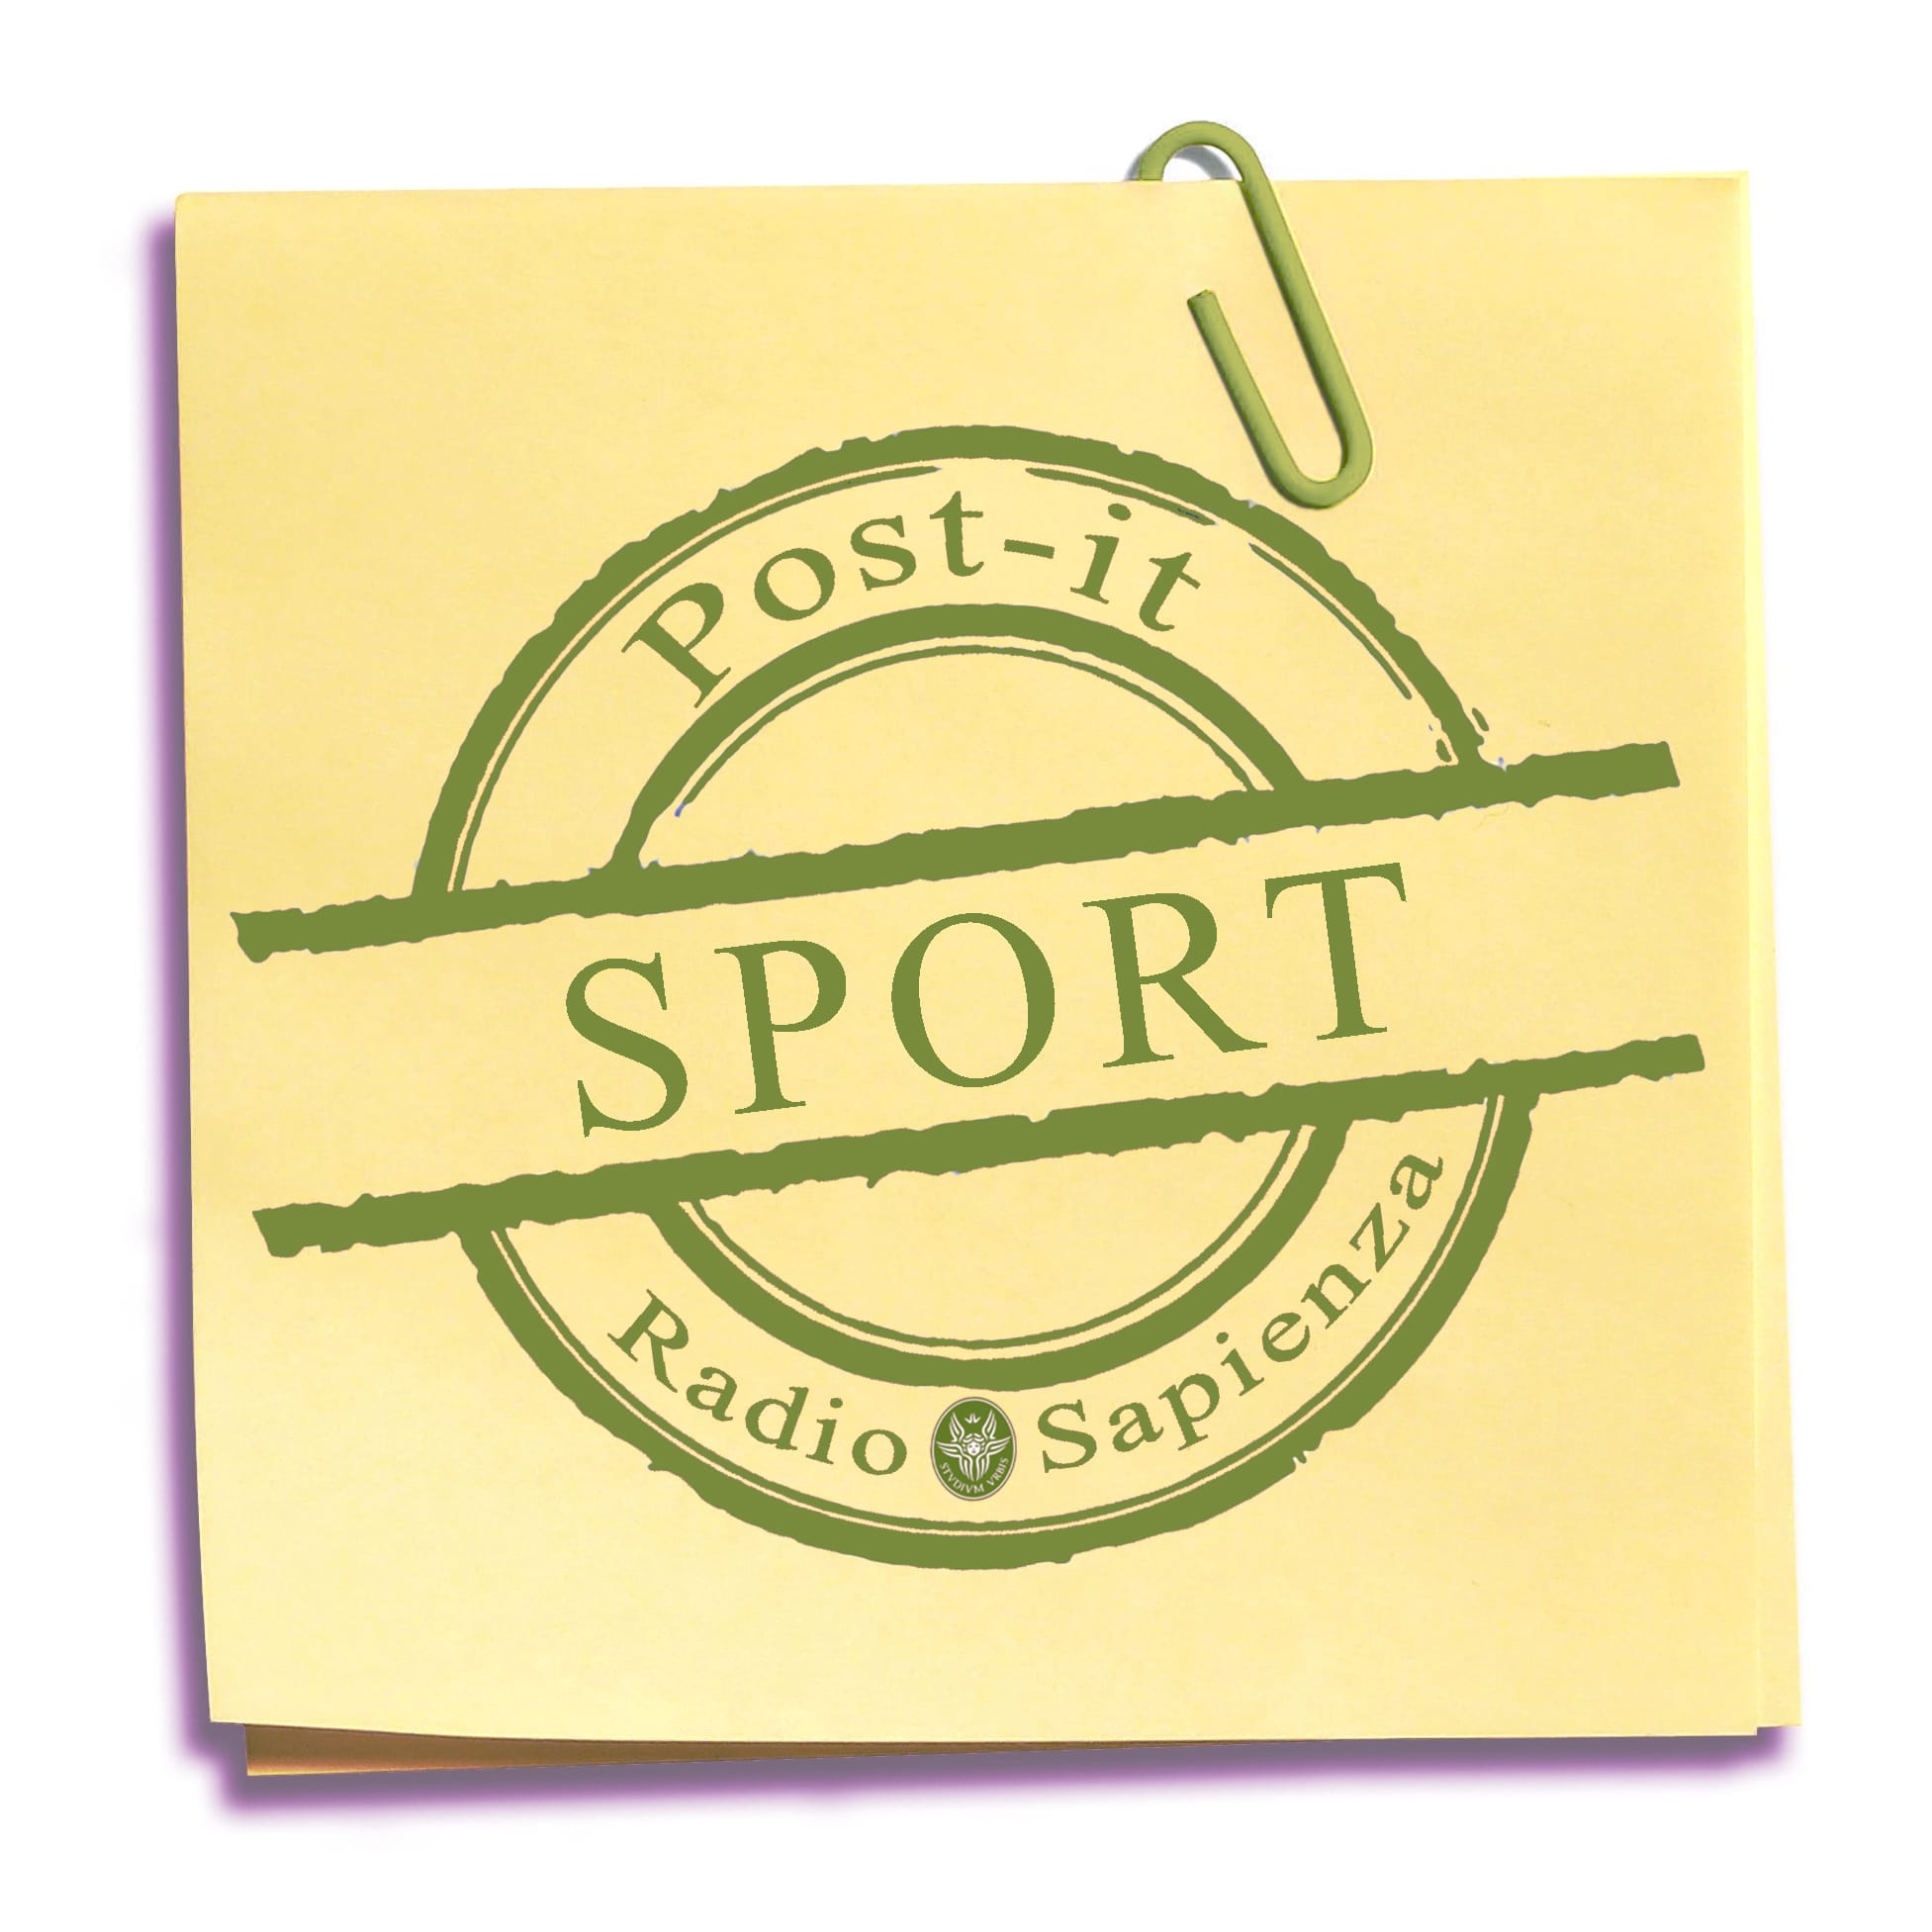 Post-it Sport – Martedì 25 maggio 2021